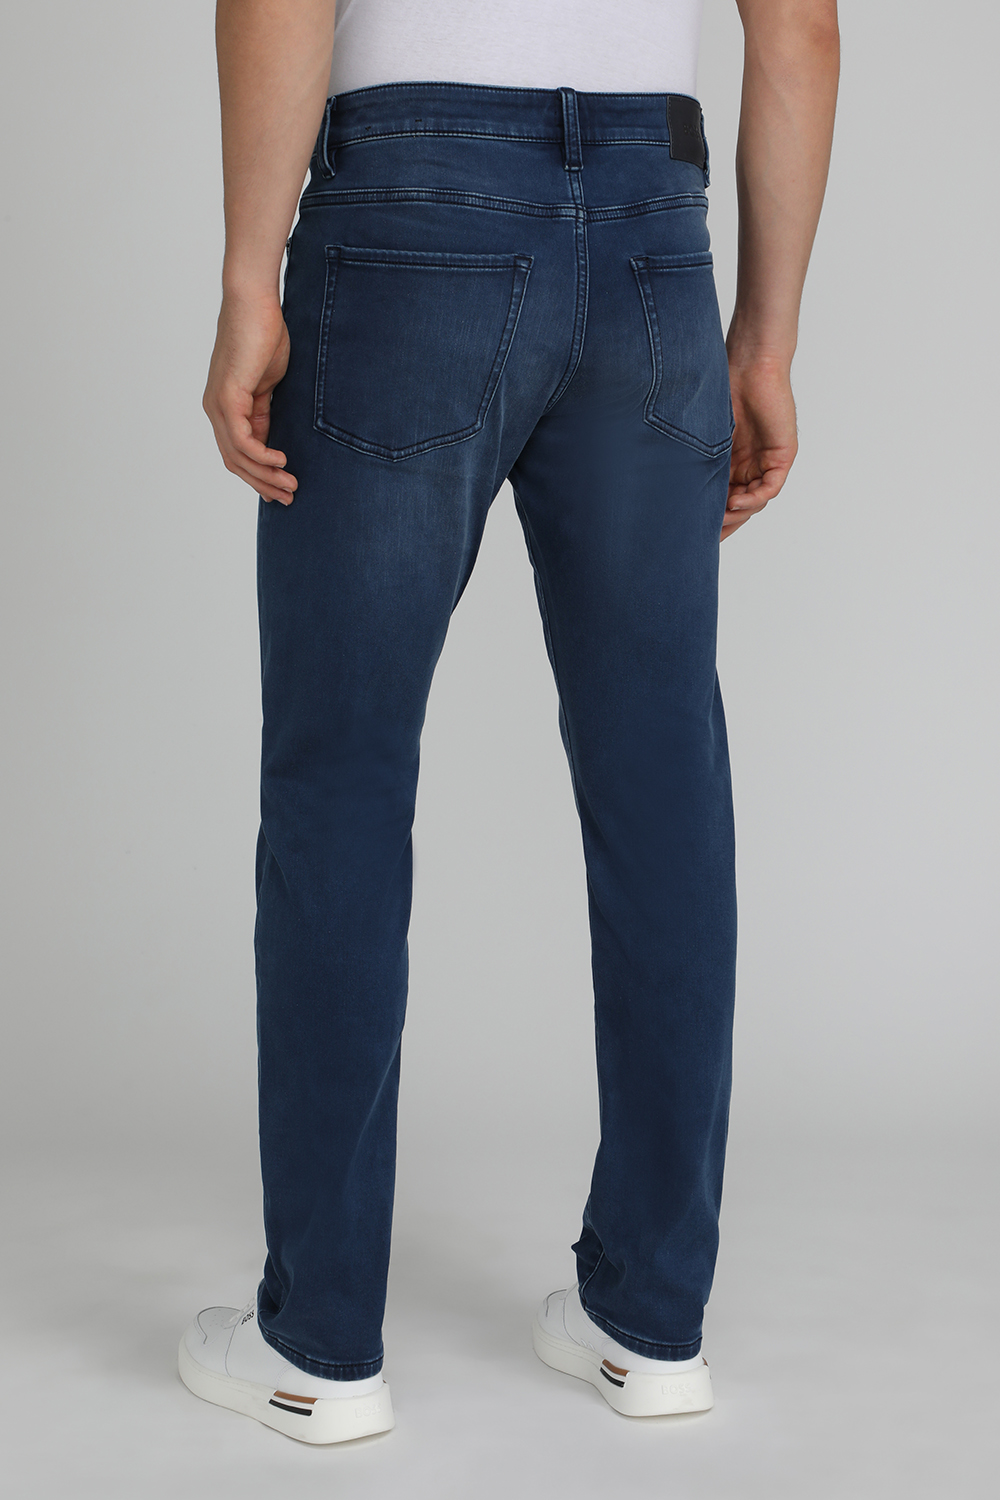 מכנס ג'ינס בגזרת סלים BOSS